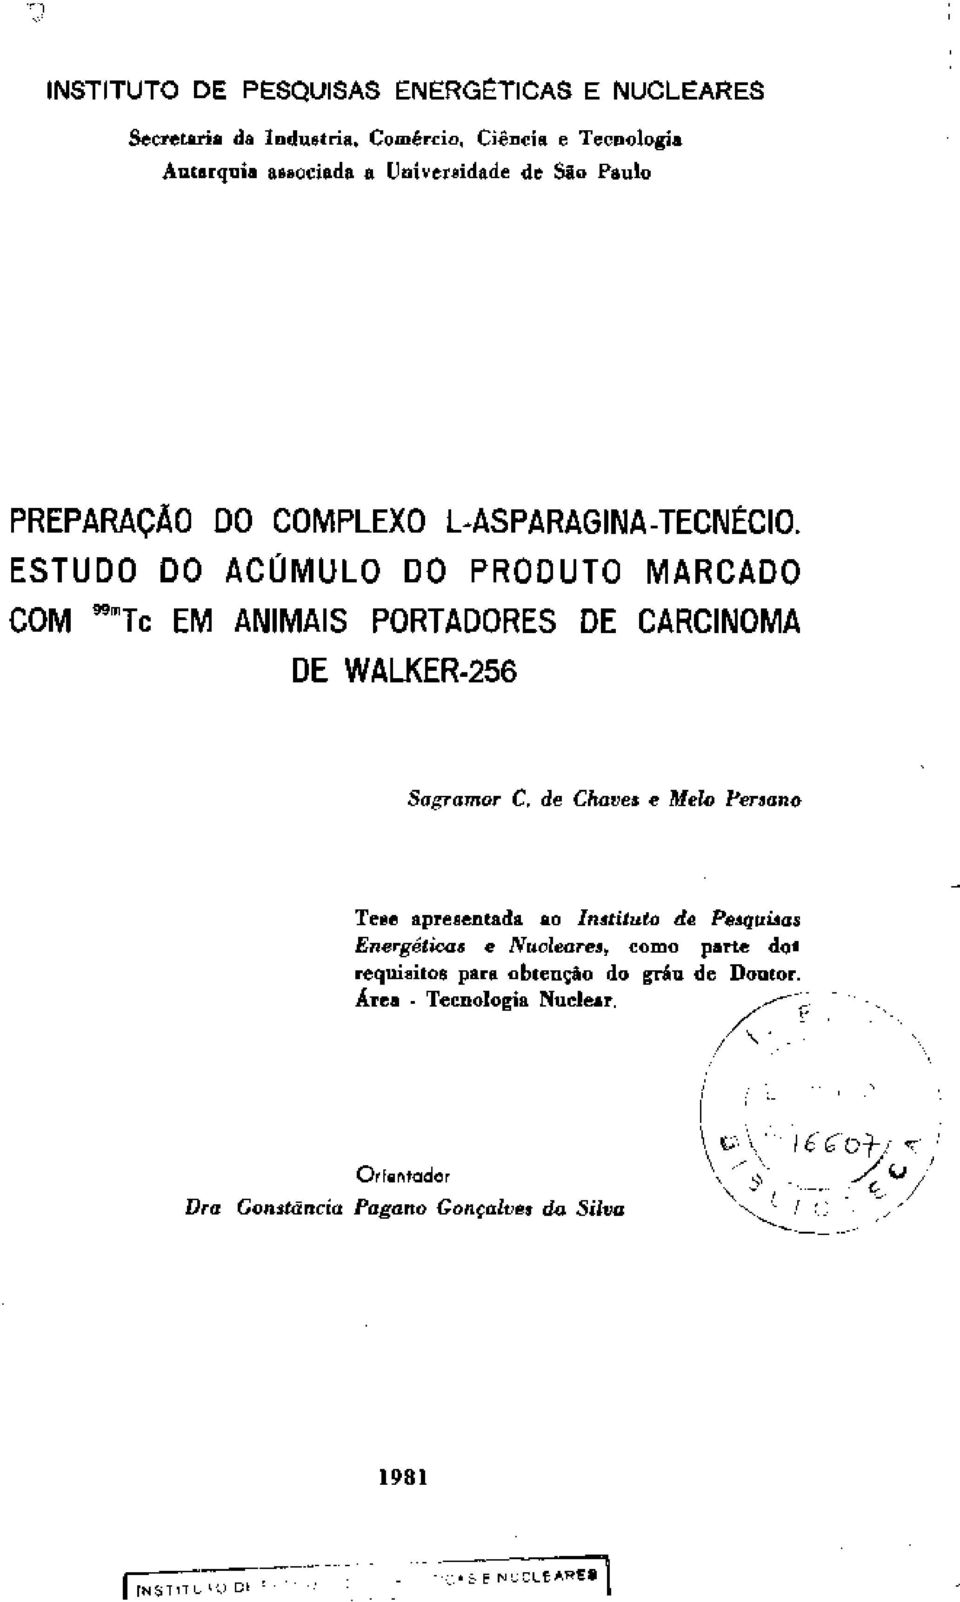 de Chaves e Melo Fersano Tese apresentada ao Instituto de Pesquisas Energéticas e Nucleares, como parte dos requisitos para obtenção do grau de Doutor.